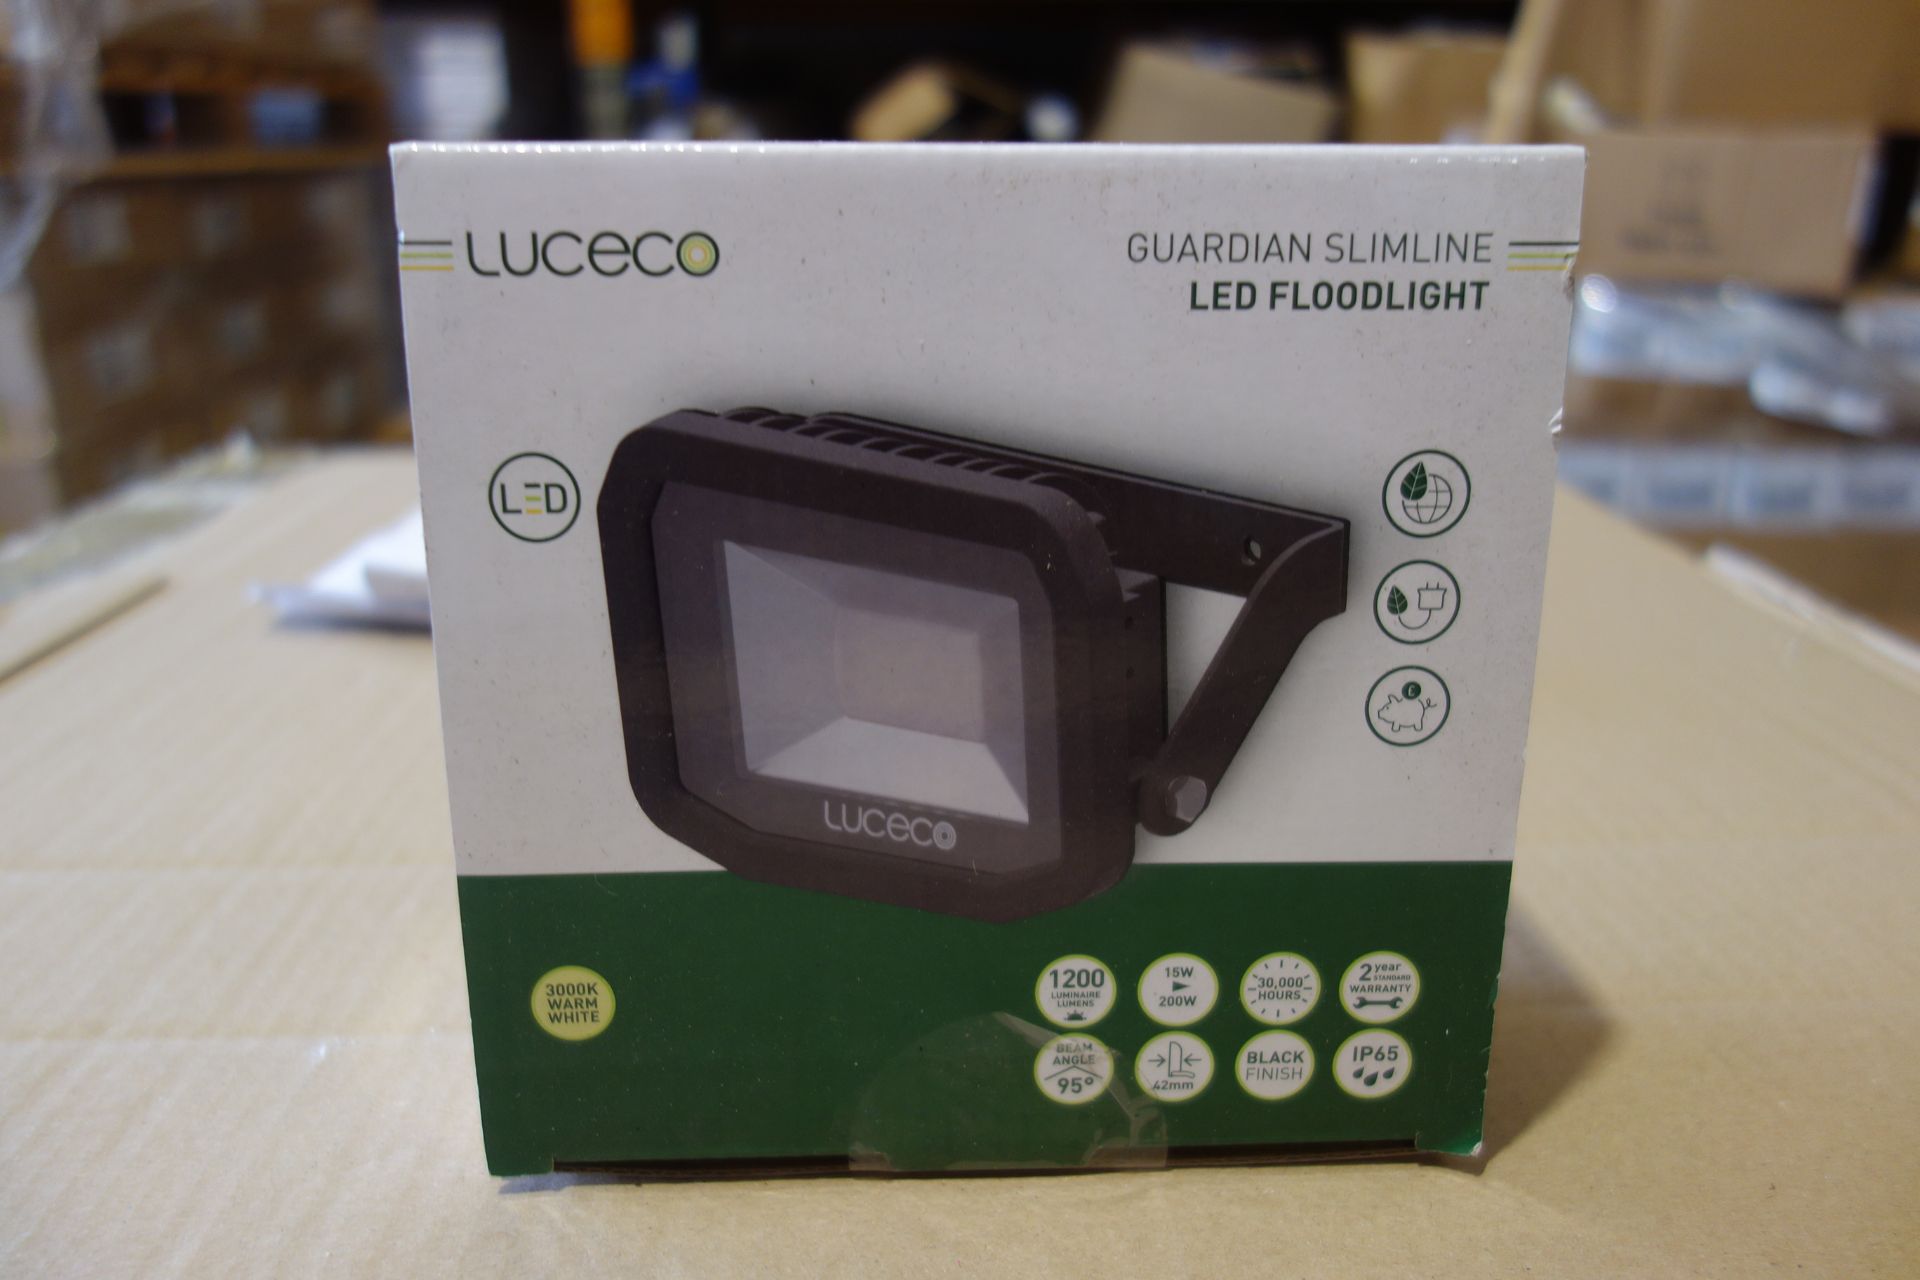 10 X Luceco LFS12B130-02 15W LED 200W Floodlights 1200 Lumen IP65 Black Finish